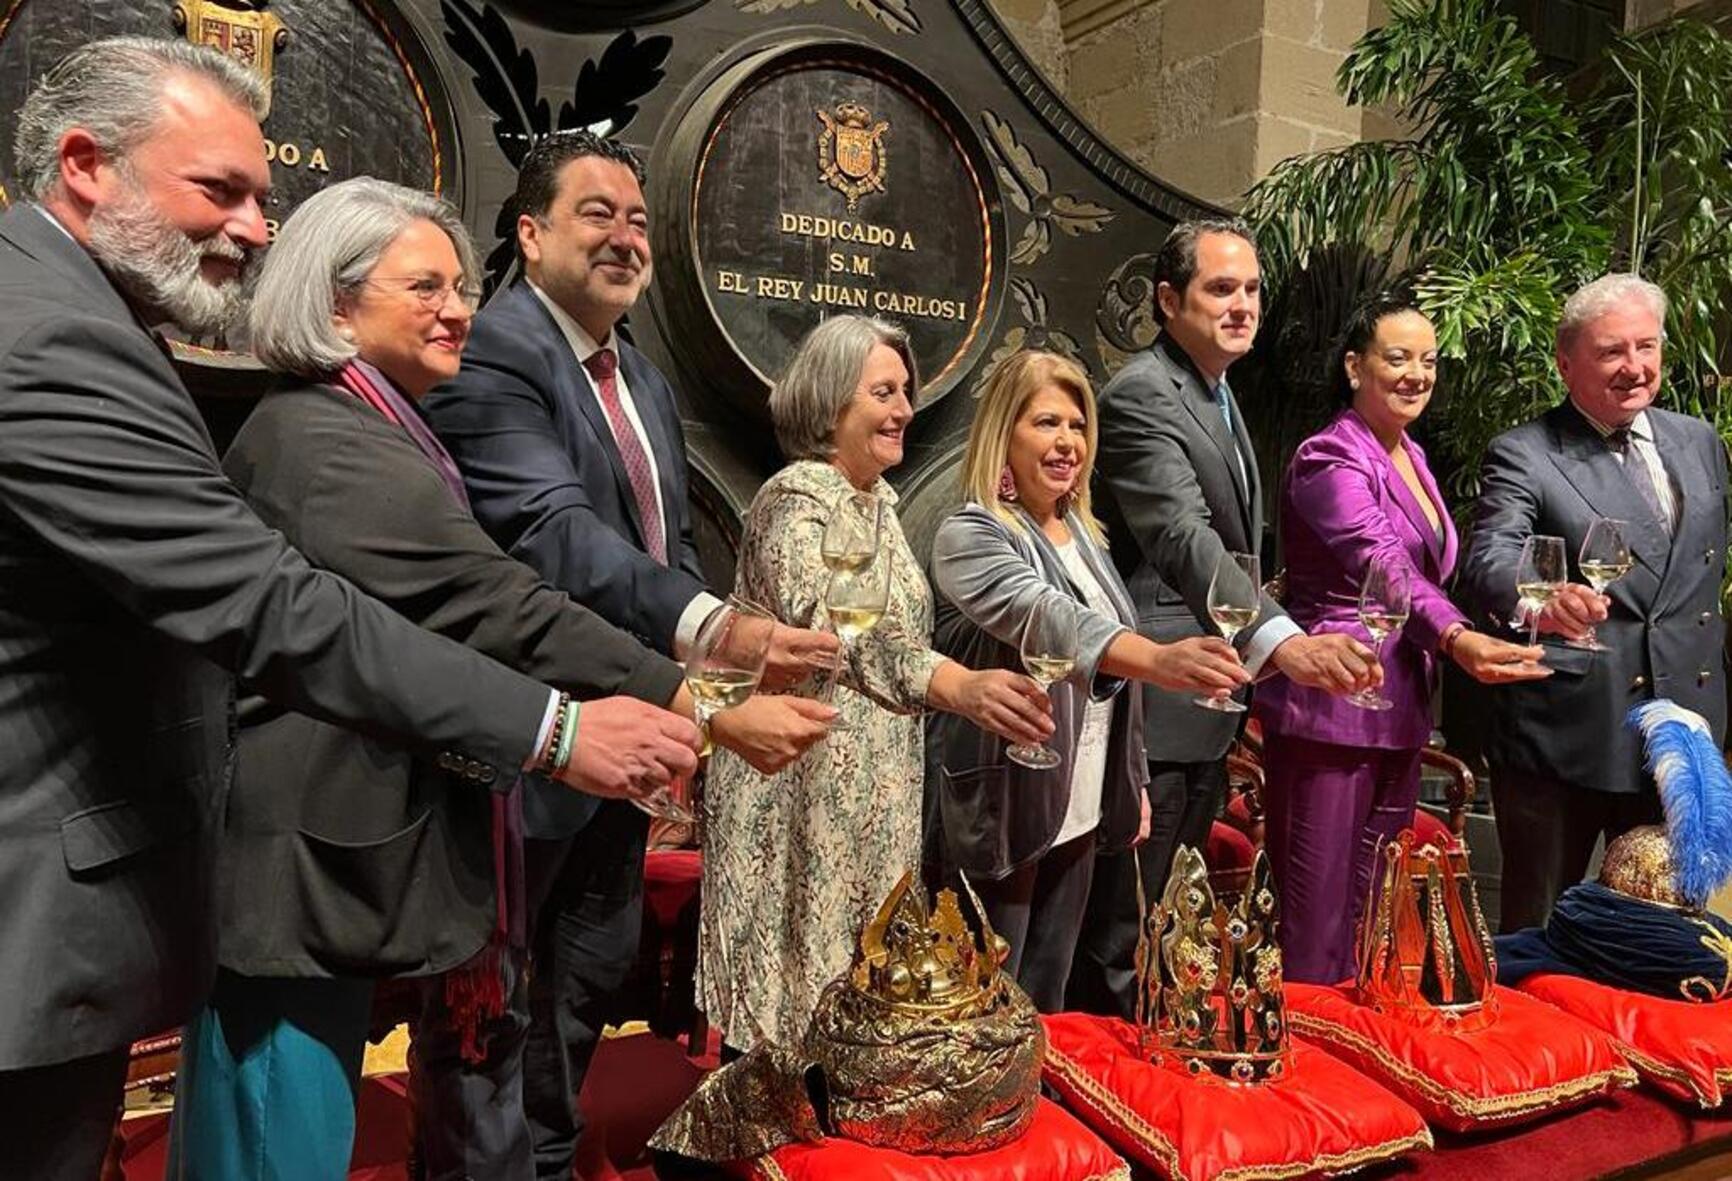 La alcaldesa felicita oficialmente a los Reyes Magos: que no falten juguetes en ninguna familia.